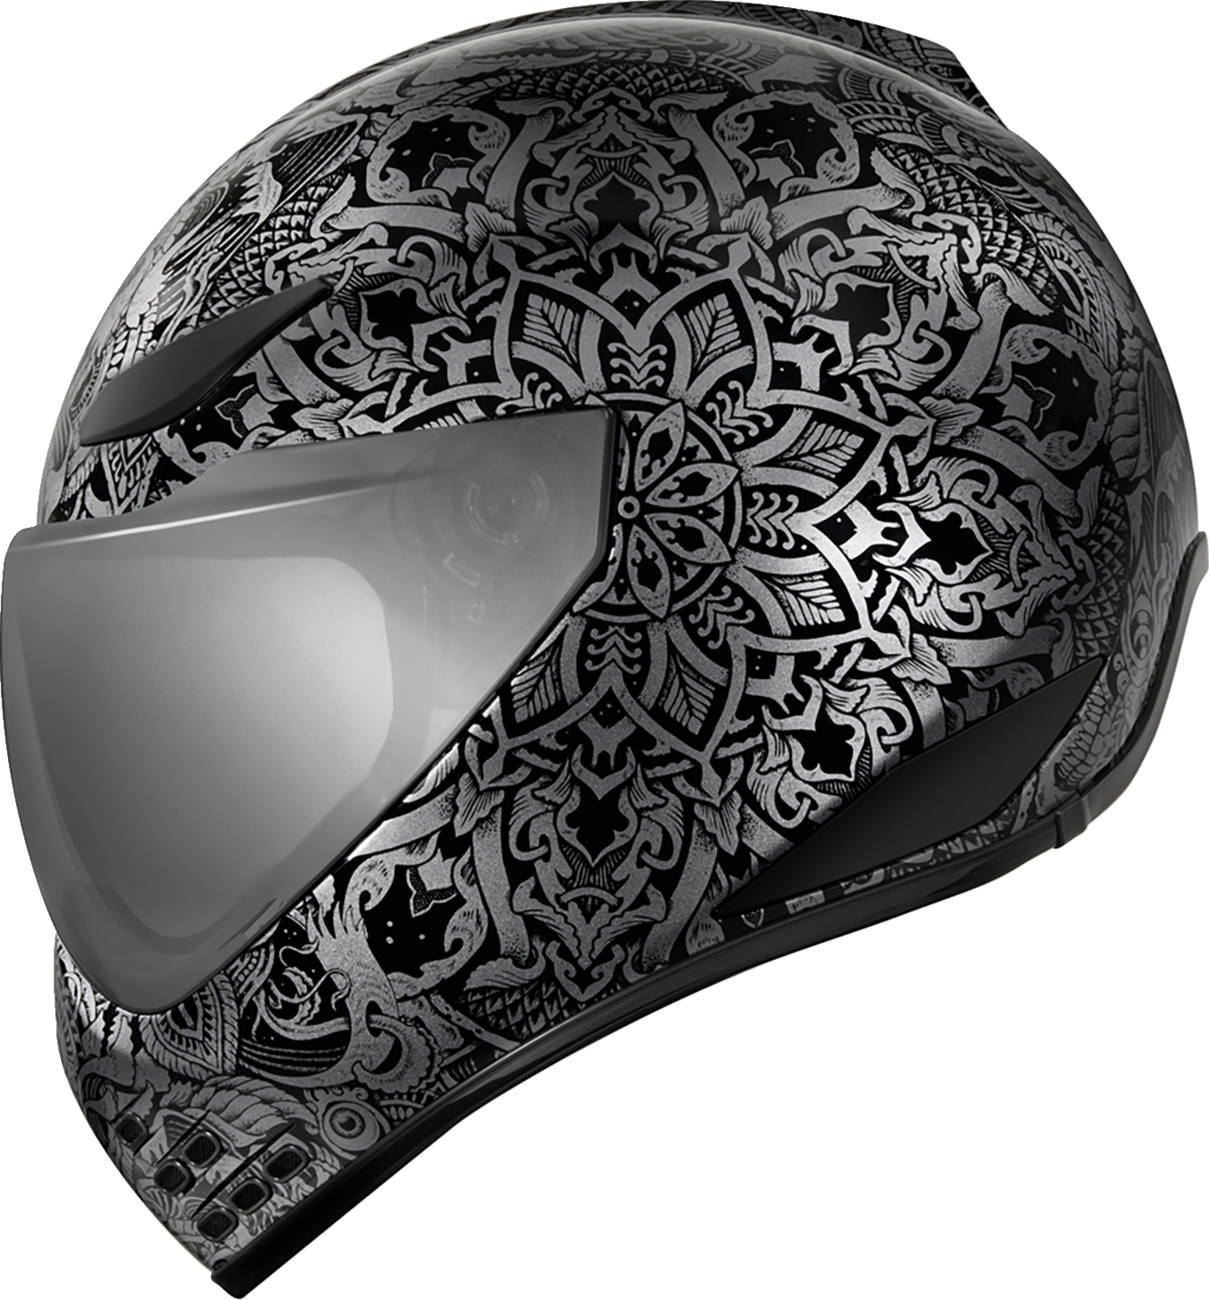 ICON Domain™ Helmet - Gravitas - Black - 3XL 0101-14964